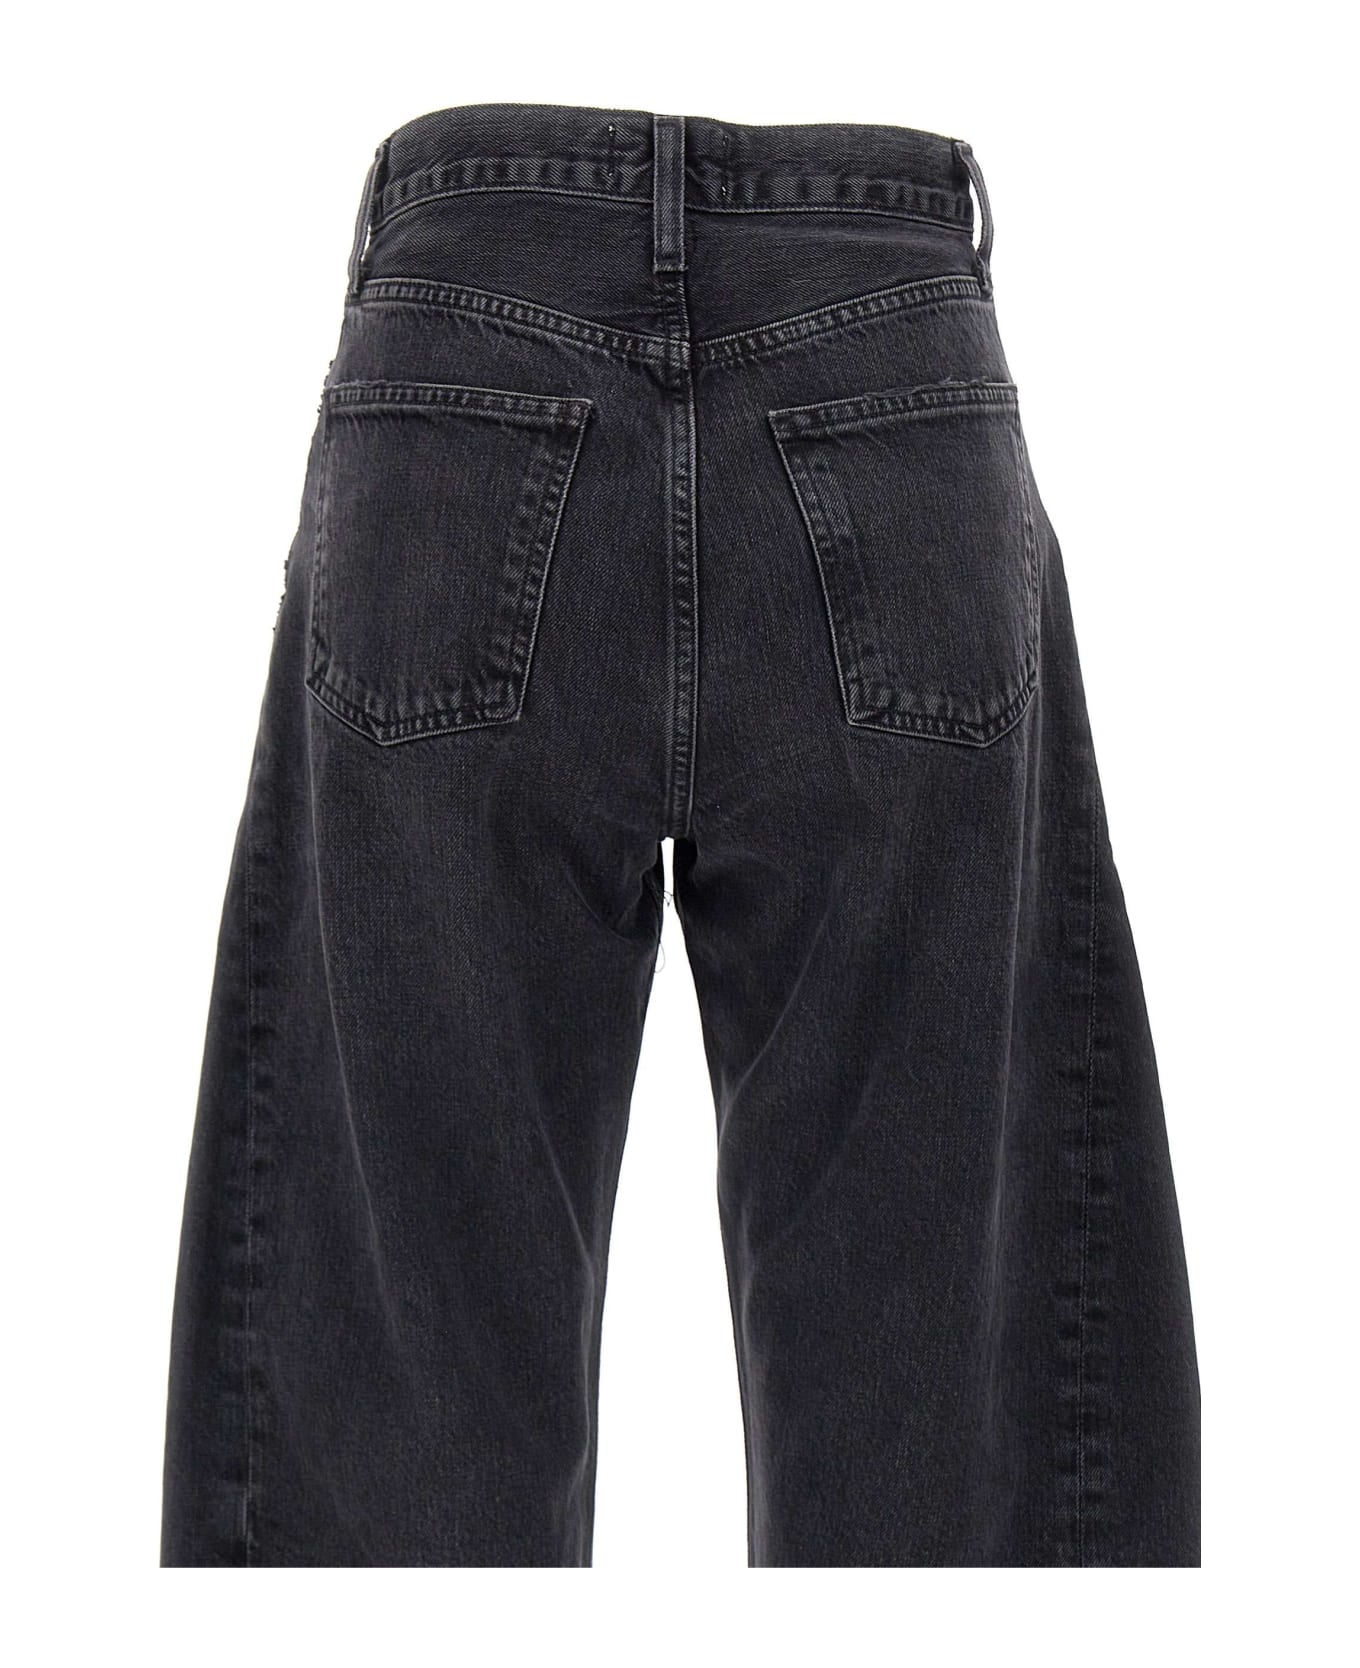 AGOLDE "luna Pieced" Organic Cotton Jeans - BLACK